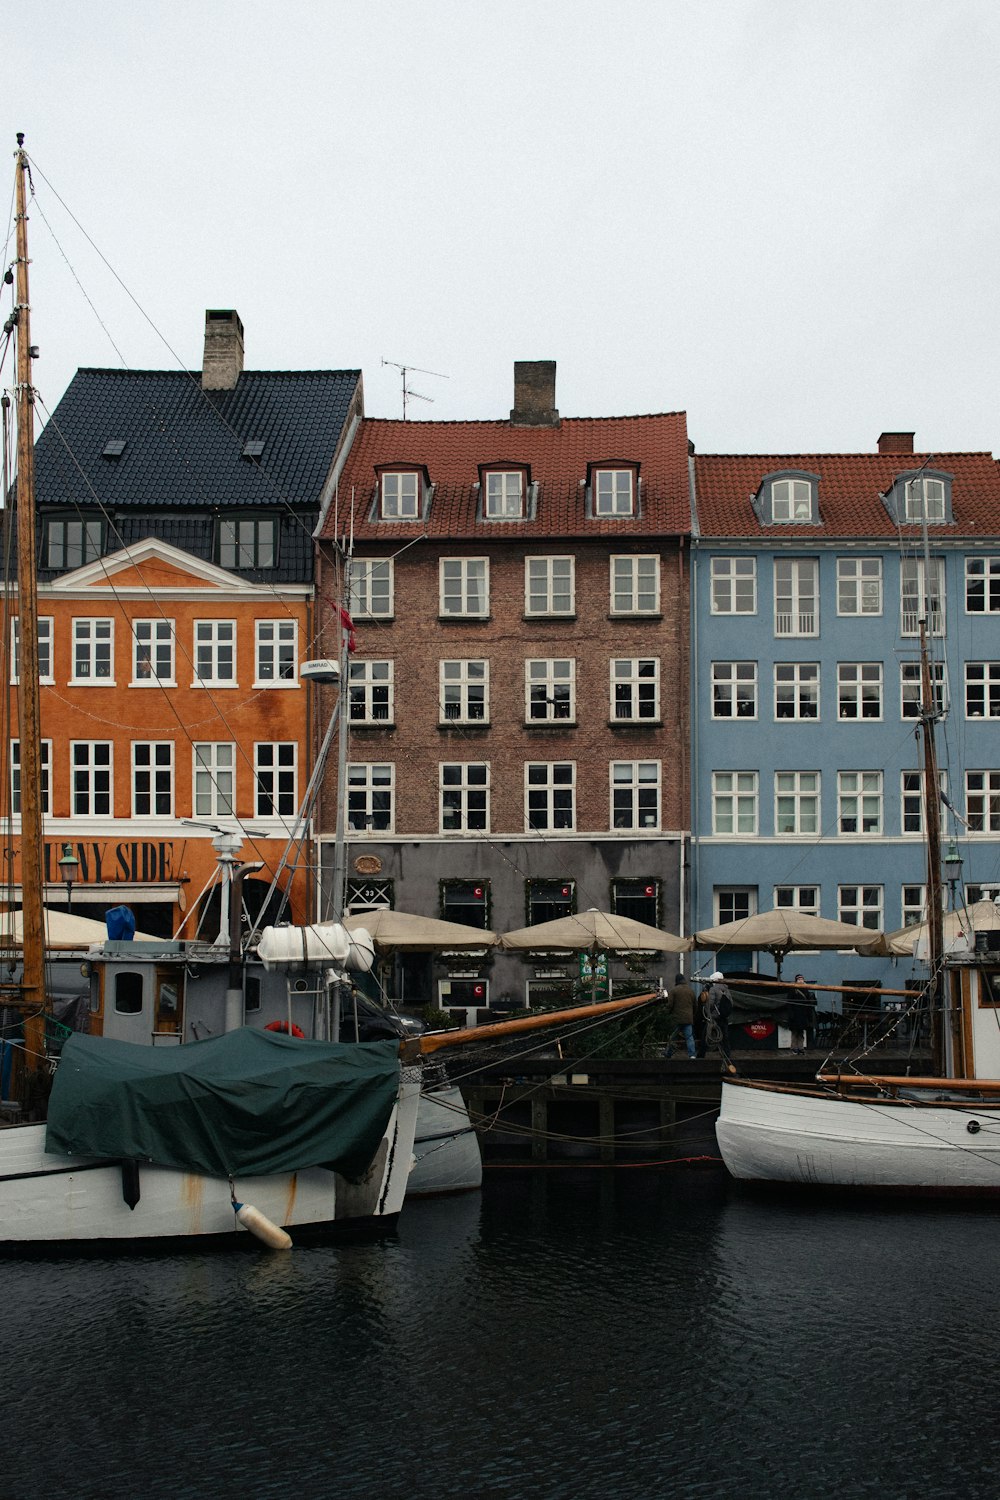 un gruppo di barche sedute in un porto accanto ad alti edifici